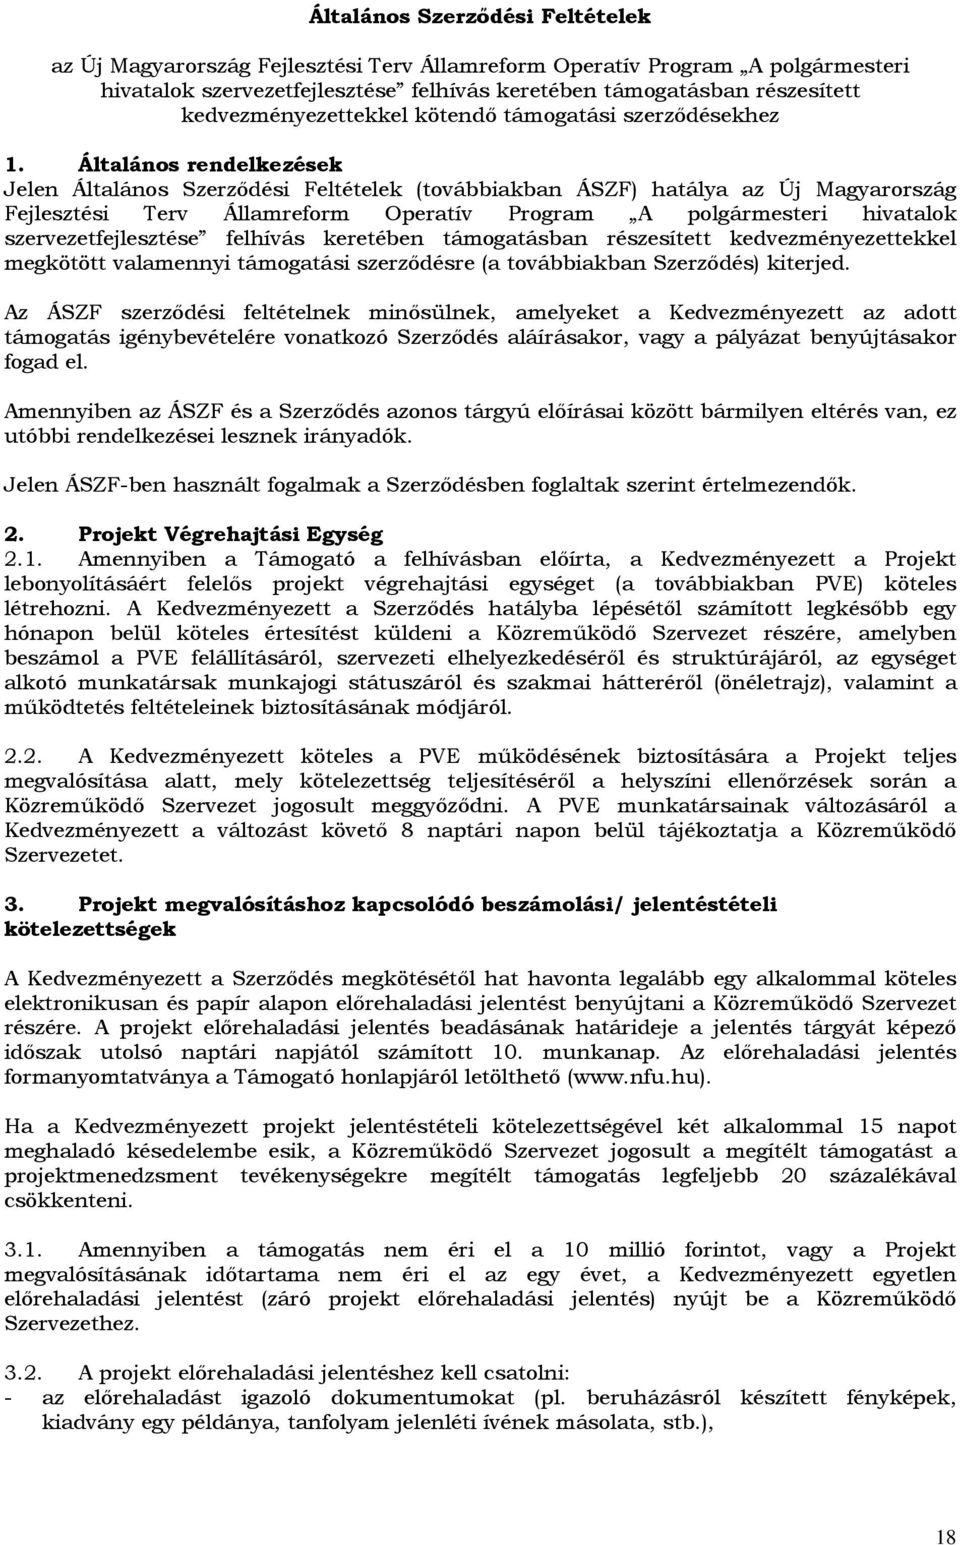 Általános rendelkezések Jelen Általános Szerzıdési Feltételek (továbbiakban ÁSZF) hatálya az Új Magyarország Fejlesztési Terv Államreform Operatív Program A polgármesteri hivatalok